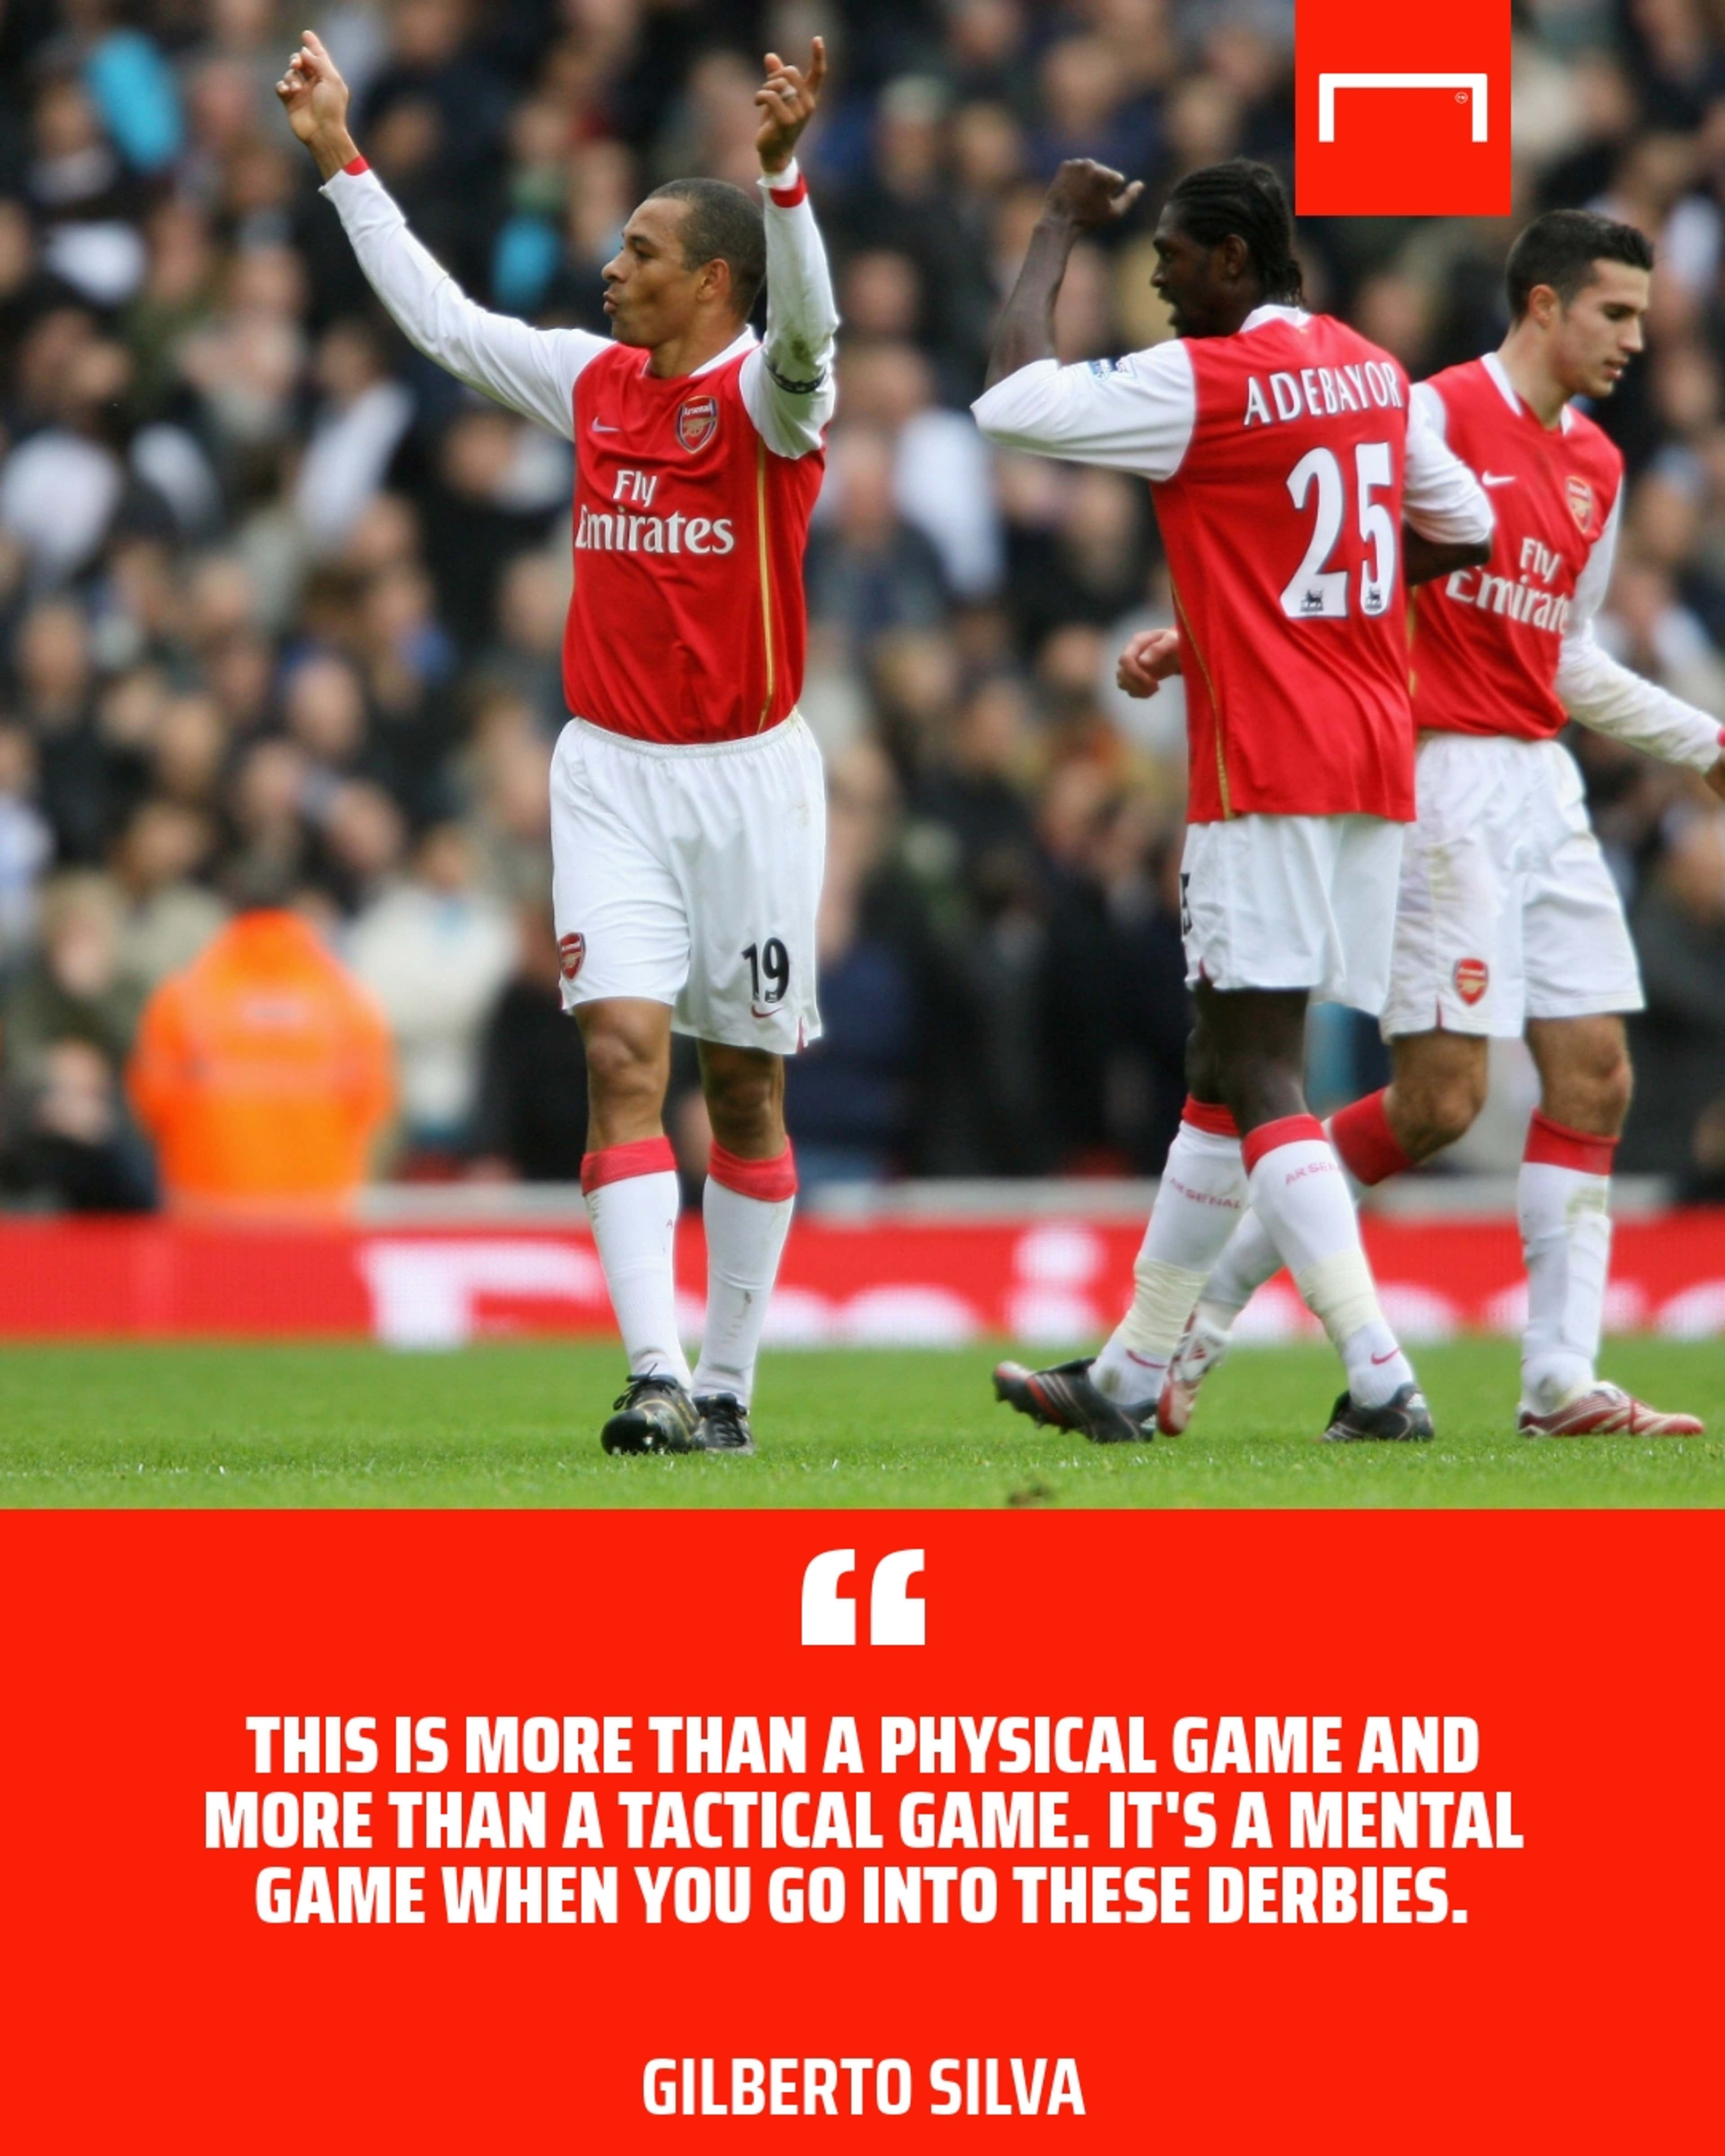 Gilberto Silva Arsenal quote GFX